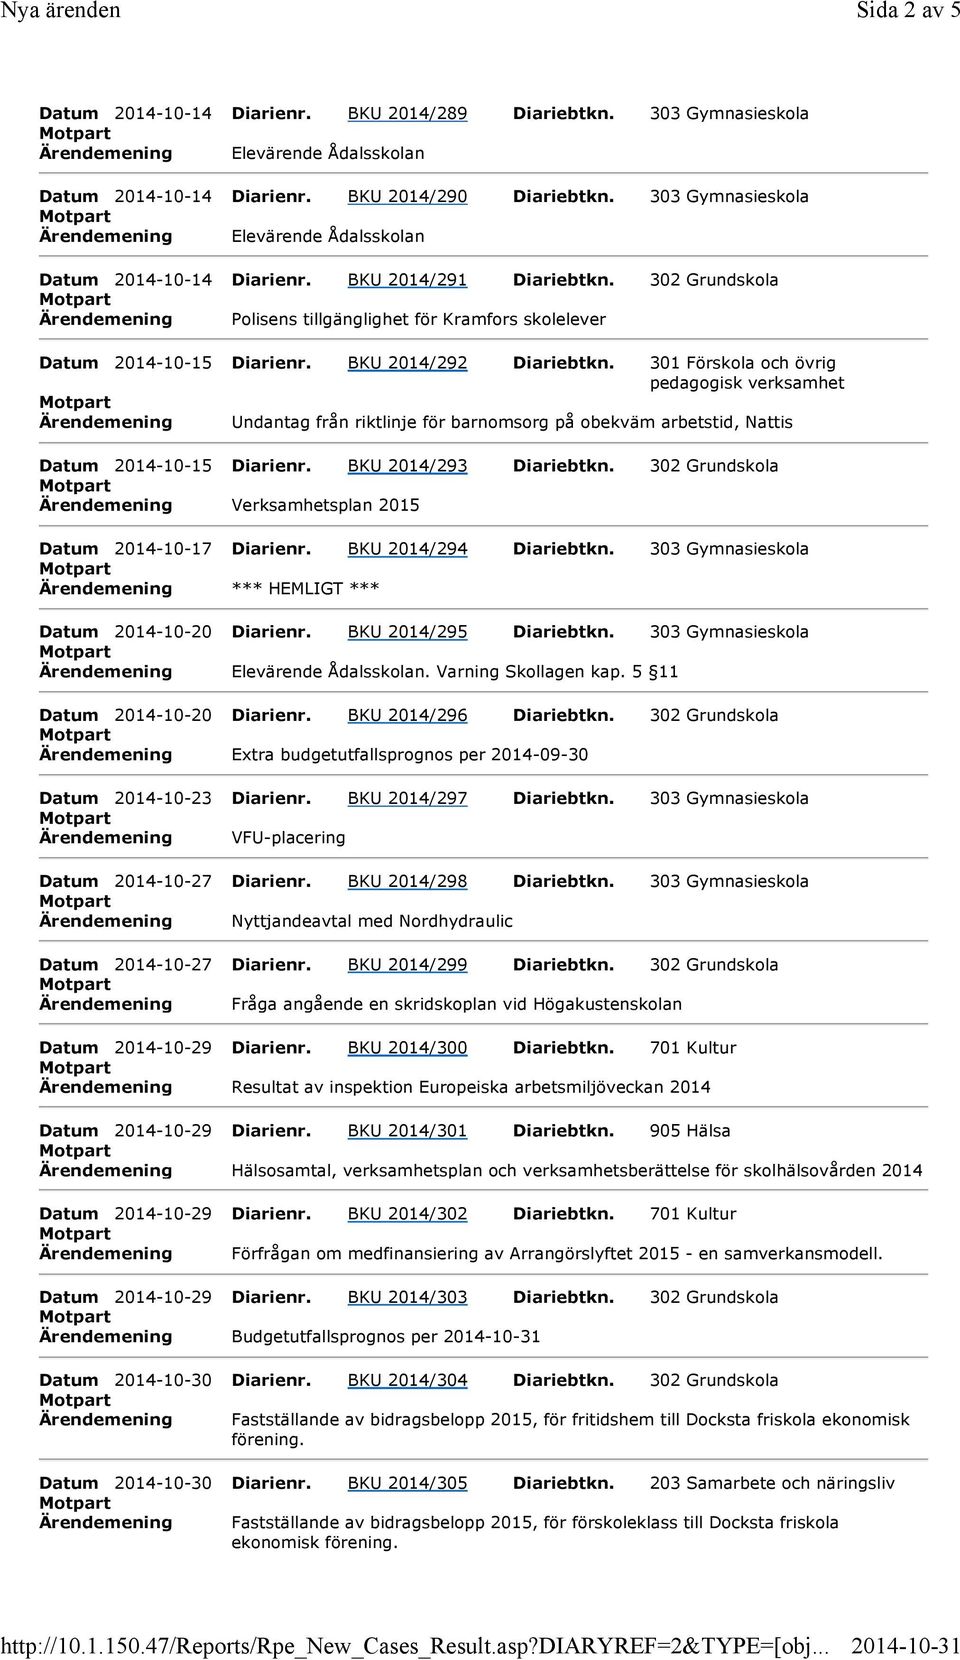 302 Grundskola Ärendemening Polisens tillgänglighet för Kramfors skolelever Datum 2014-10-15 Diarienr. BKU 2014/292 Diariebtkn.